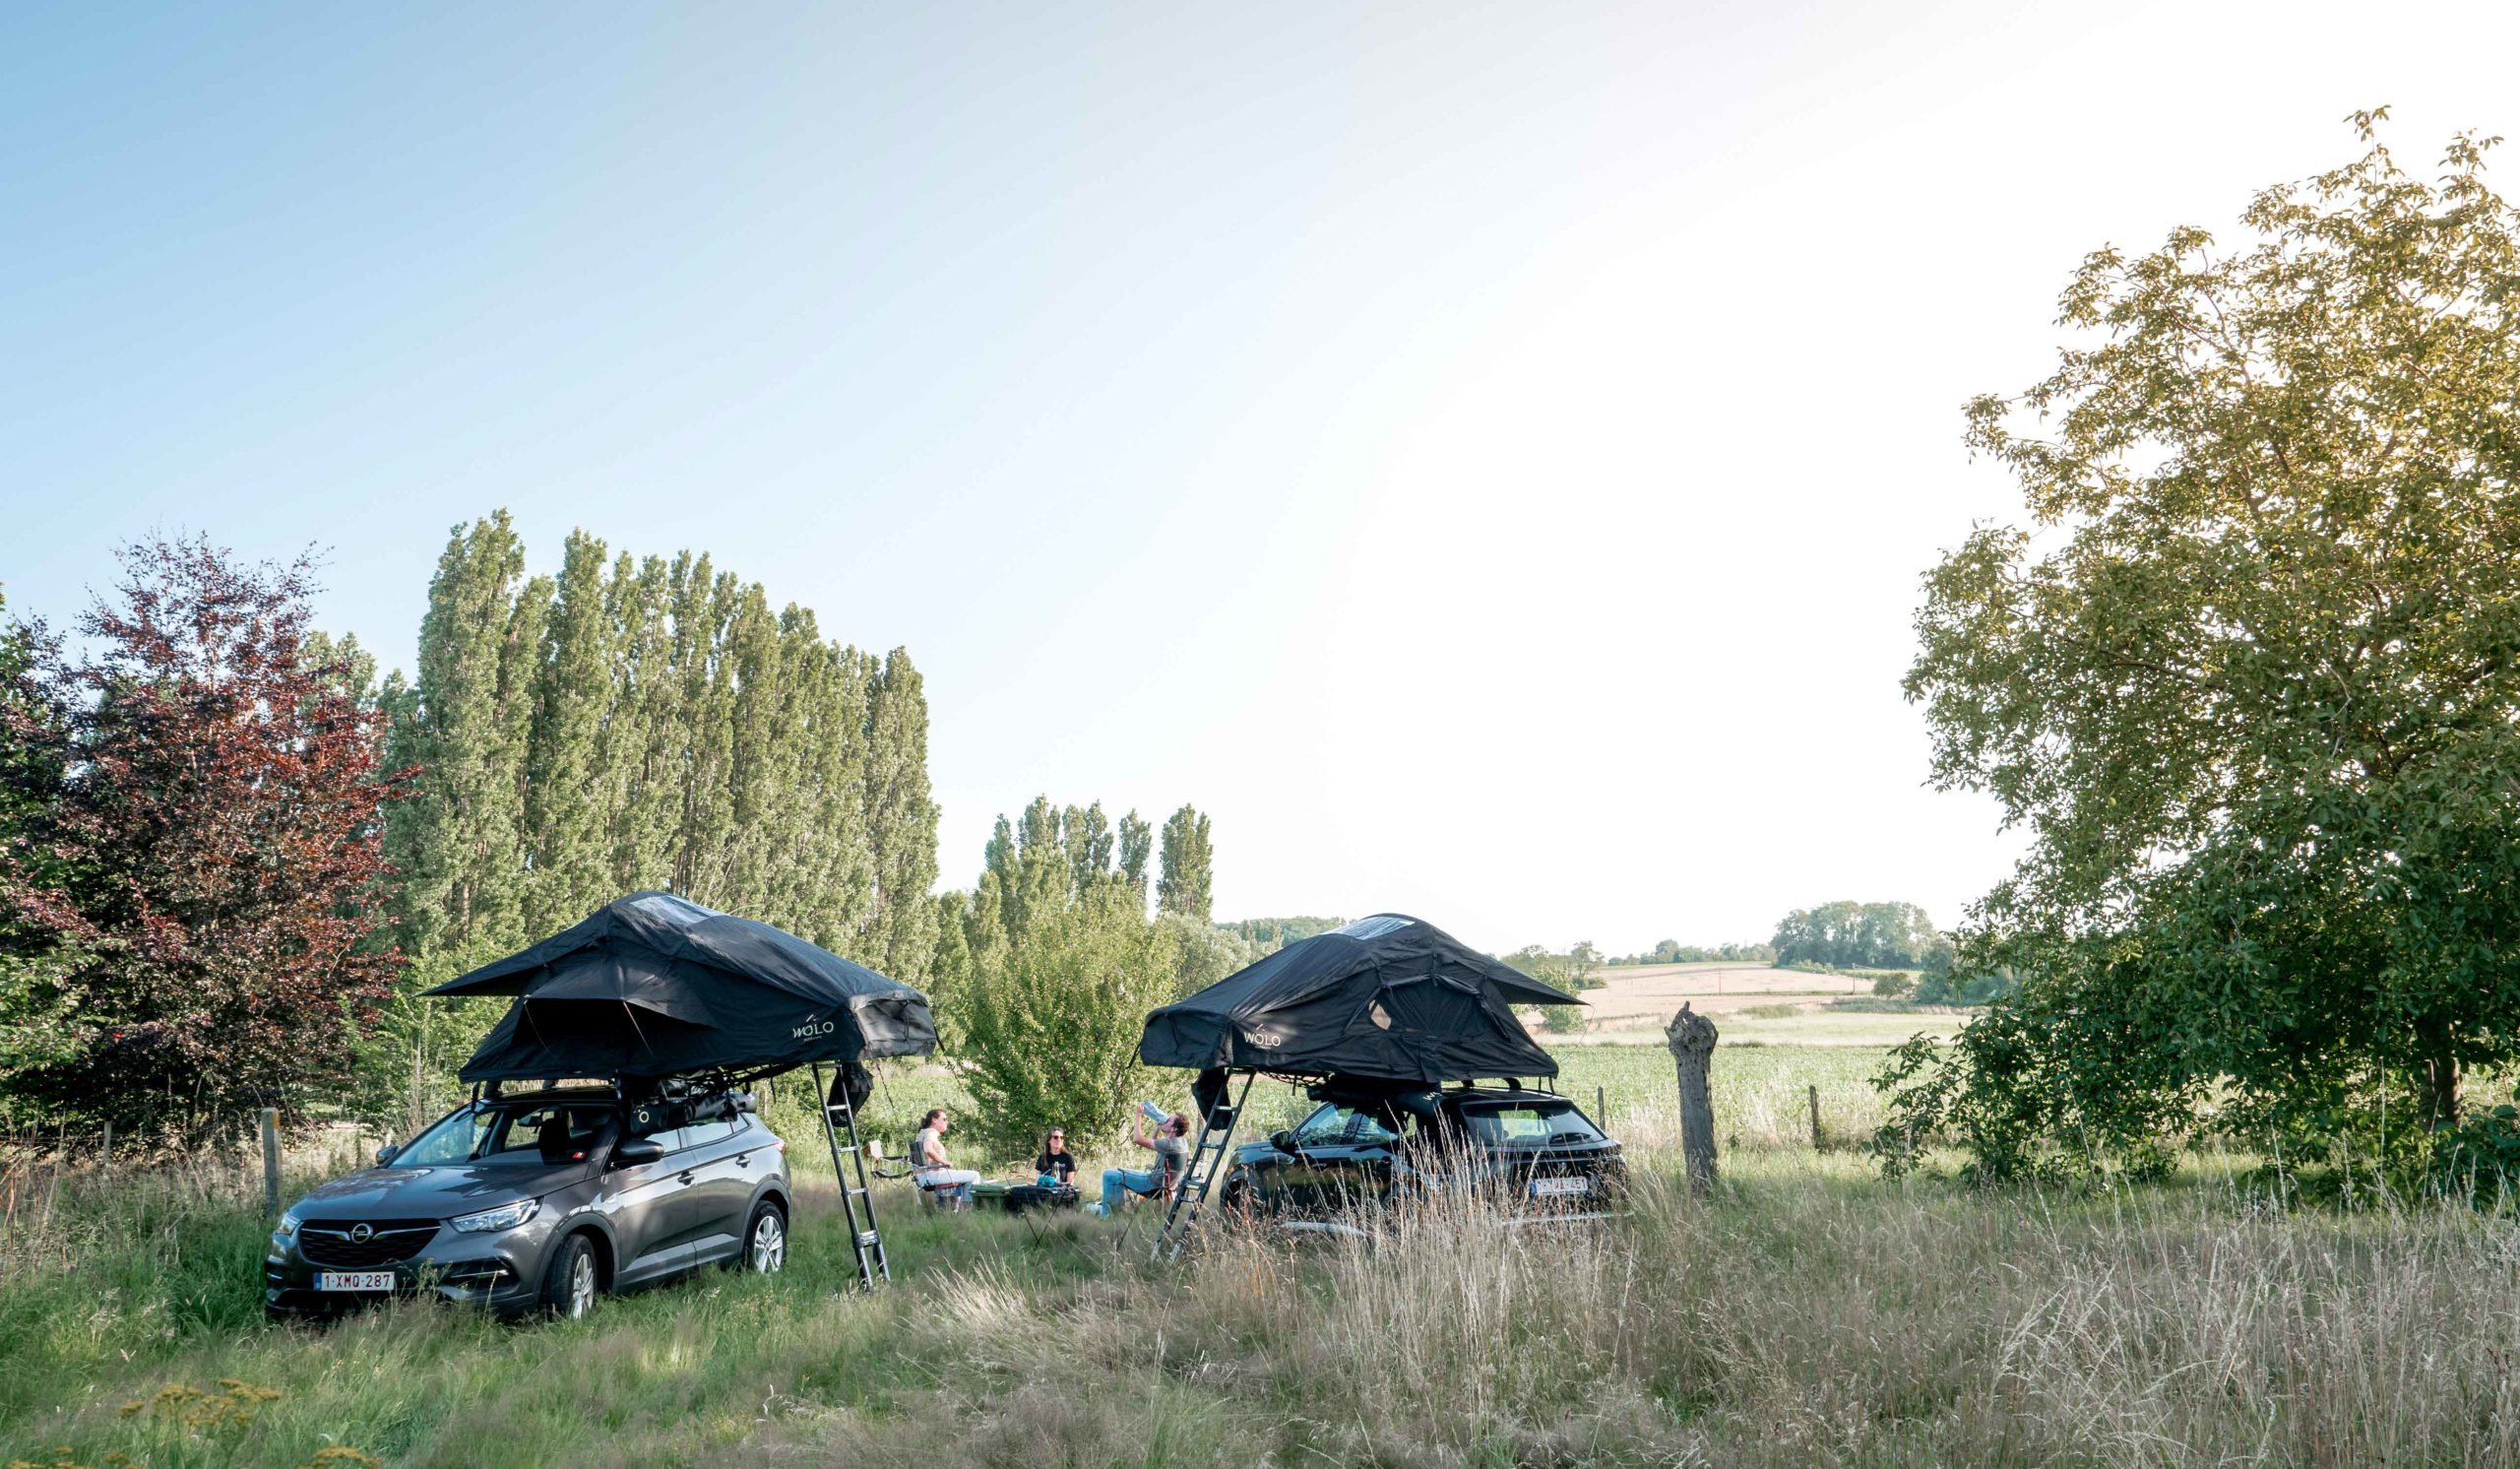 Tente de toit de voiture pour camping en plein air, coque souple